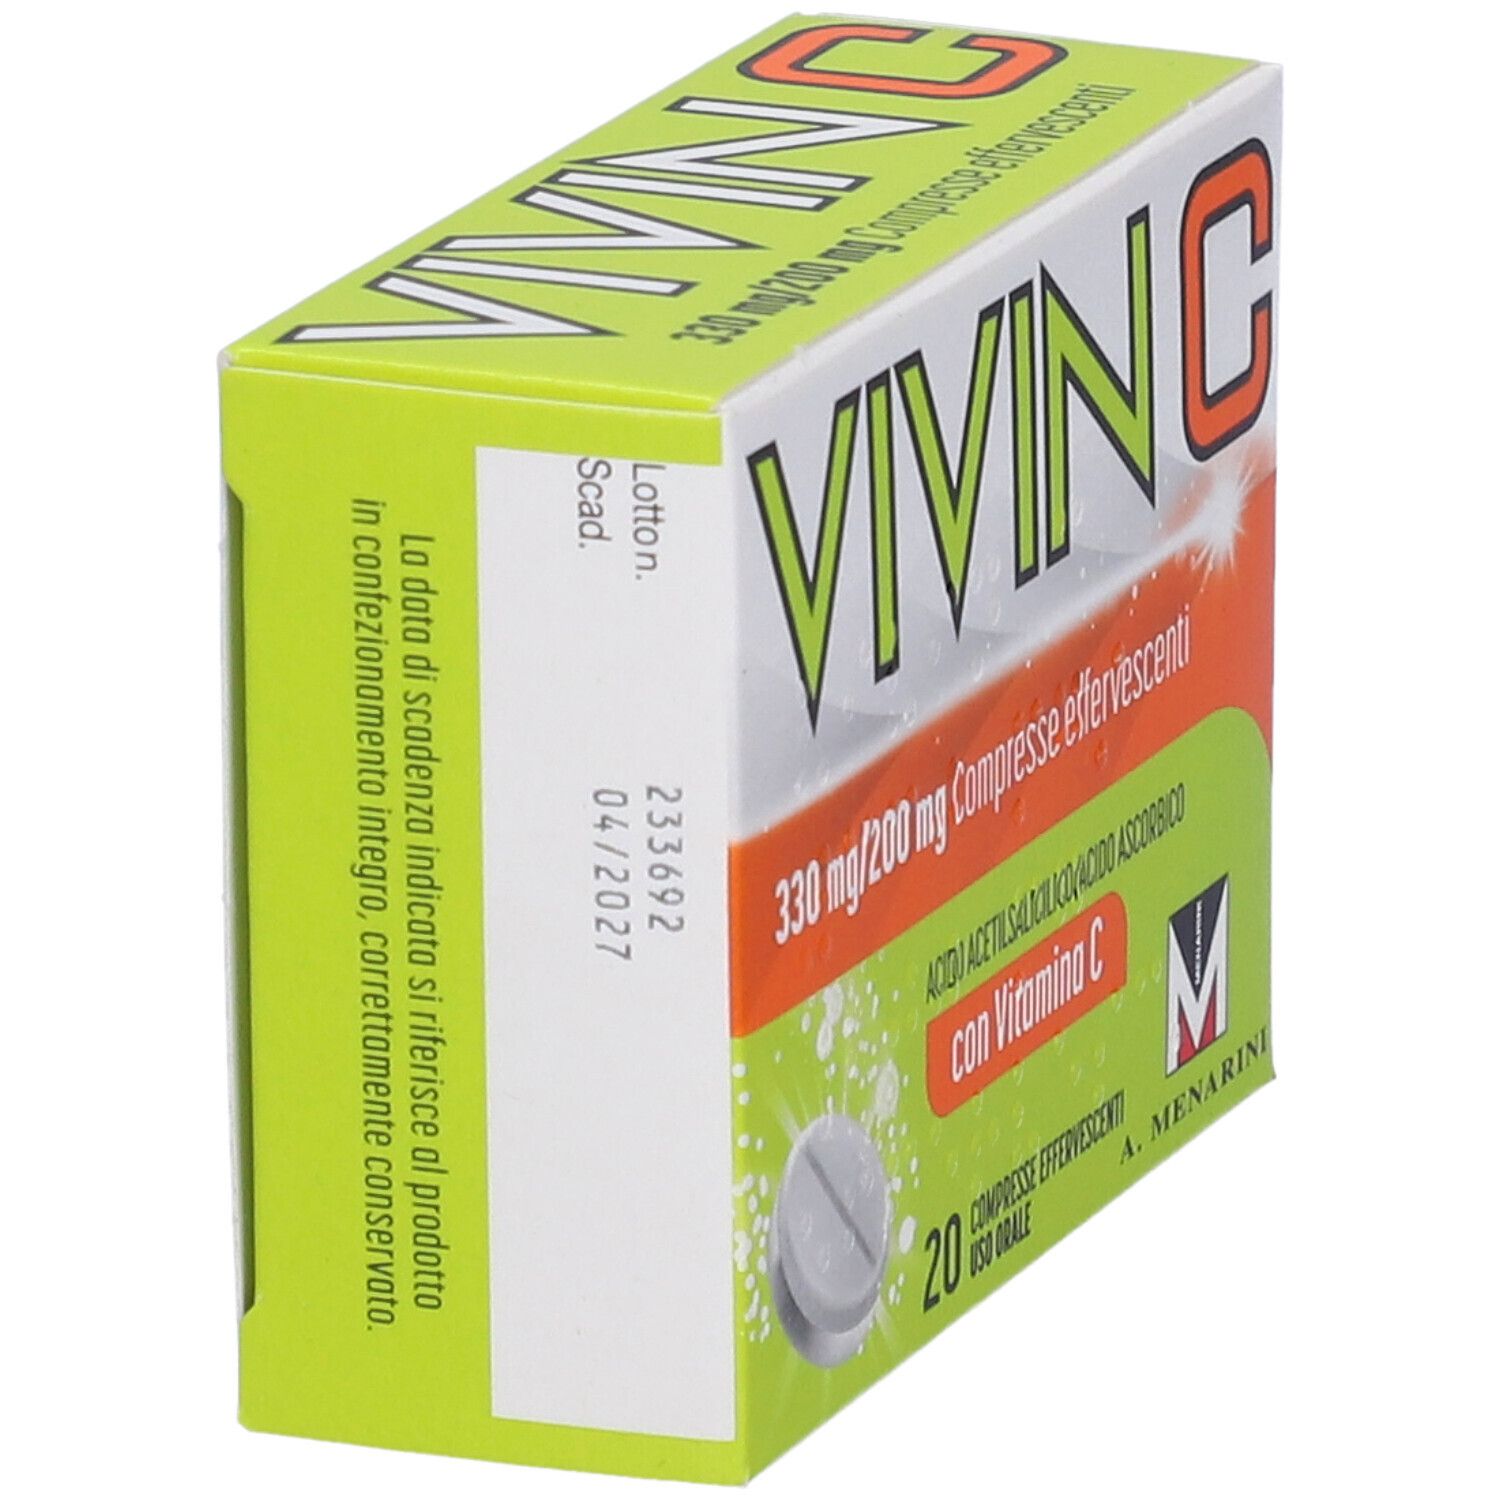 Vivin C contro primi sintomi influenzali e raffreddore 20 compresse effervescenti, con Vit C